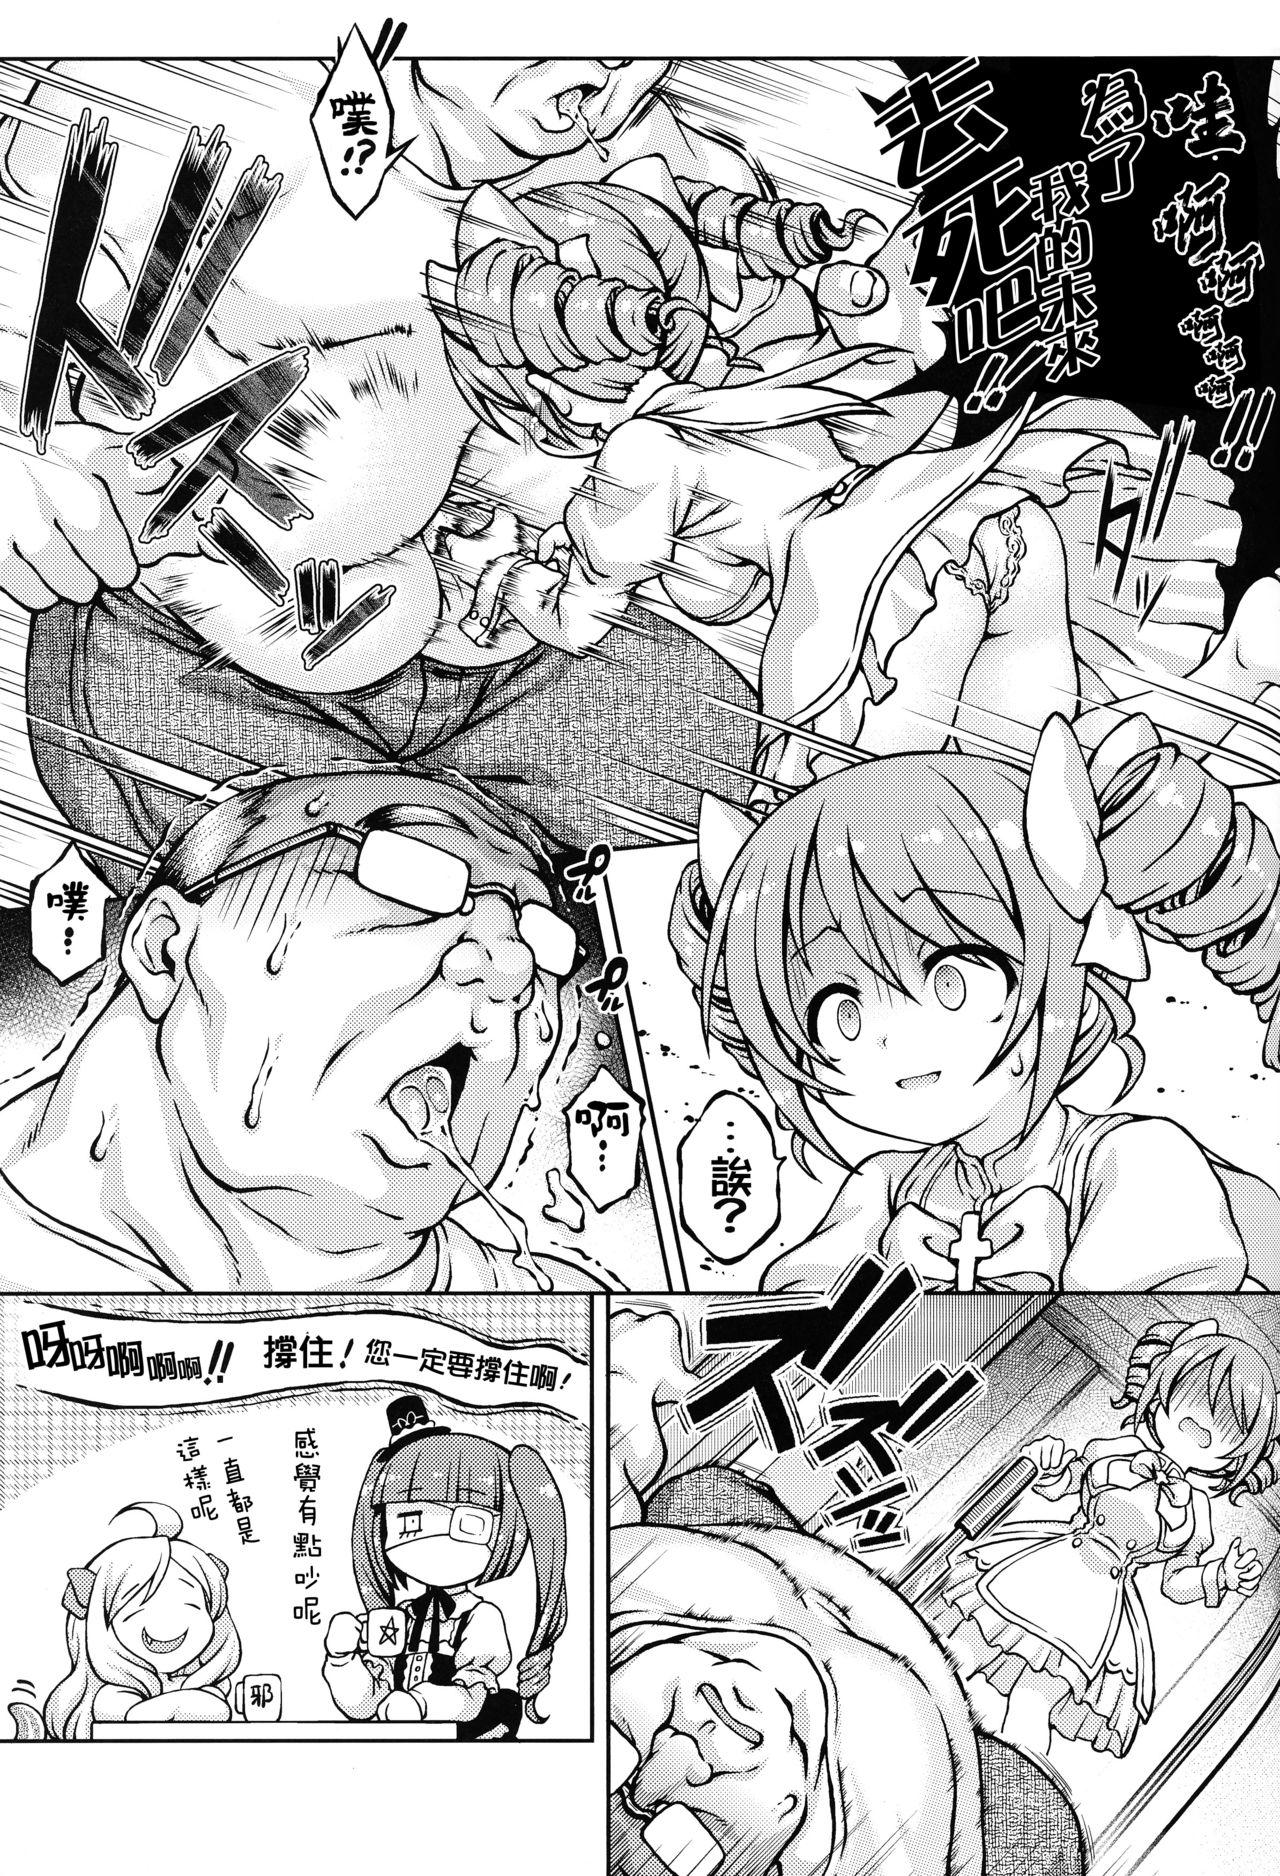 4some Tenshi-chan DropOut - Jashin chan dropkick Classy - Page 5